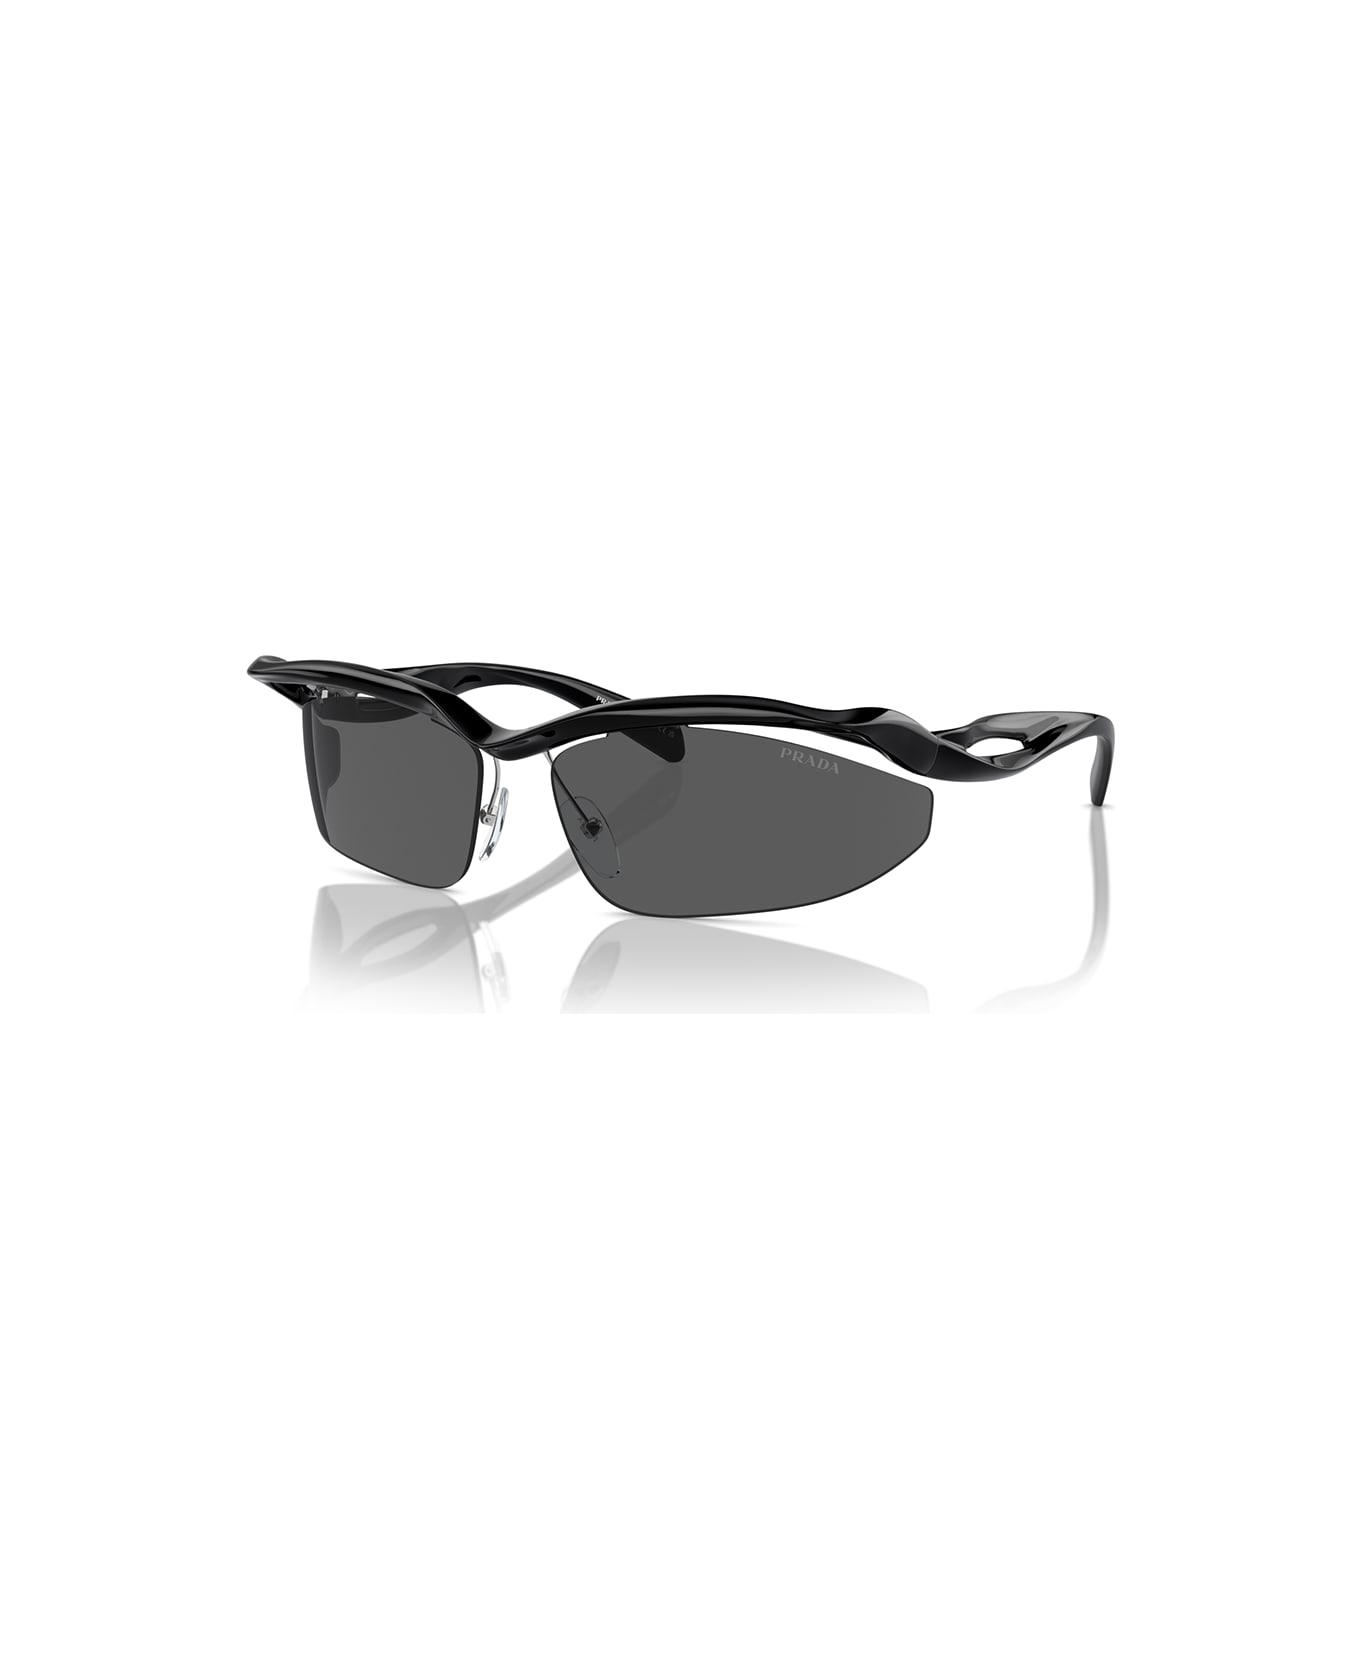 Prada Eyewear Sunglasses - Nero/Nero サングラス